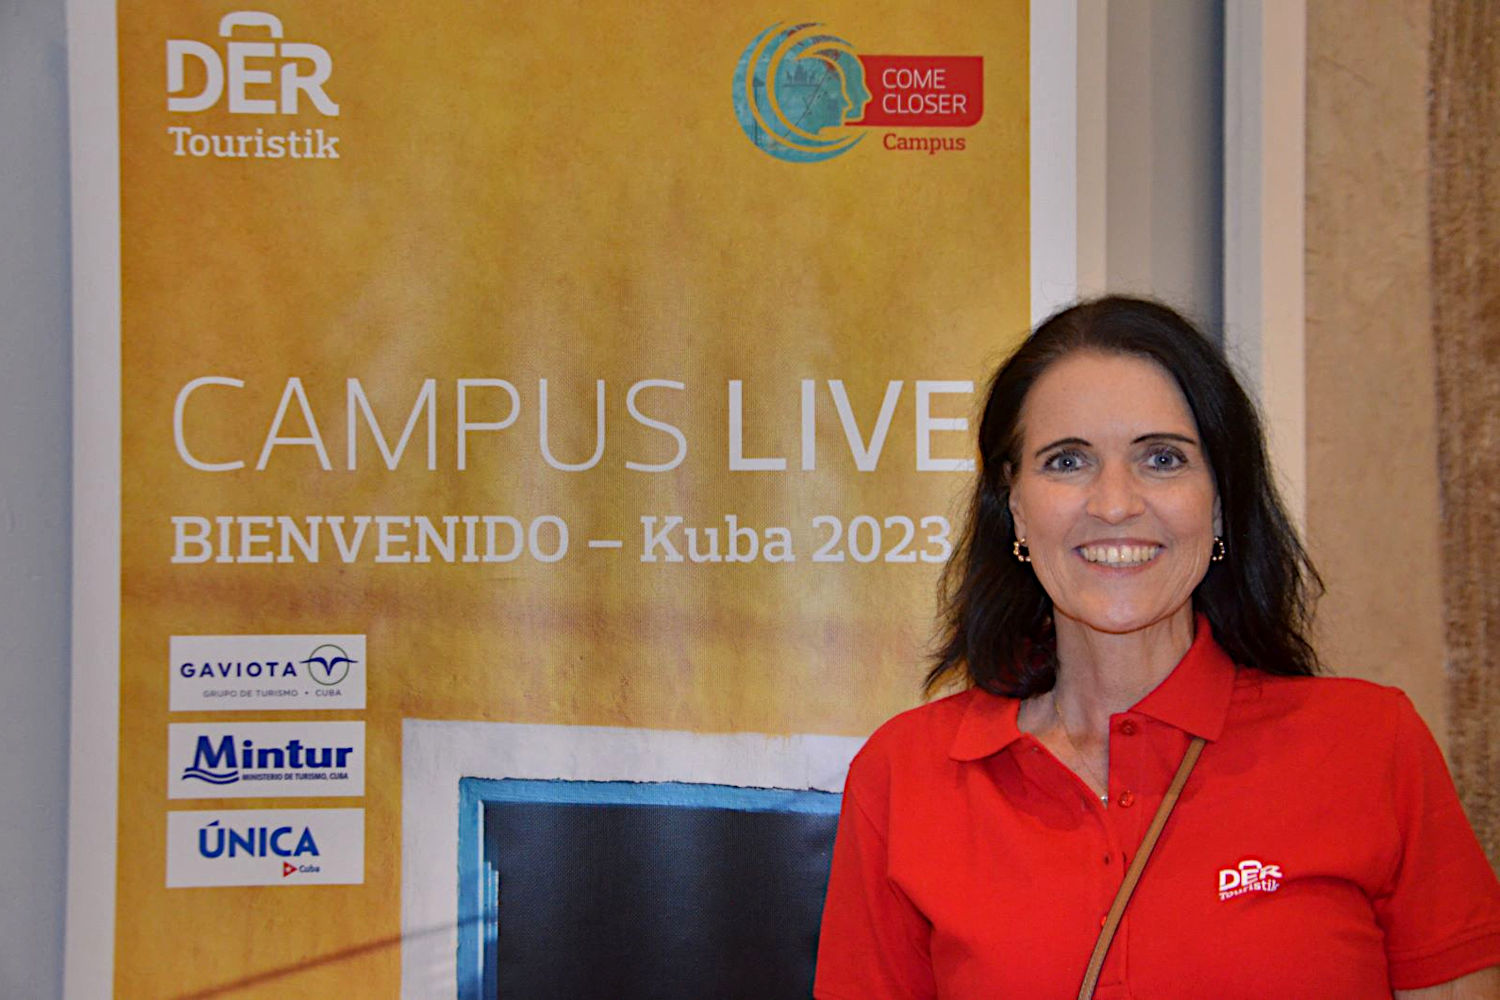 Martina Beeken, Karibik-Produktchefin bei DER Touristik, freut sich über steigende Buchungszahlen für Kuba. Foto: ras